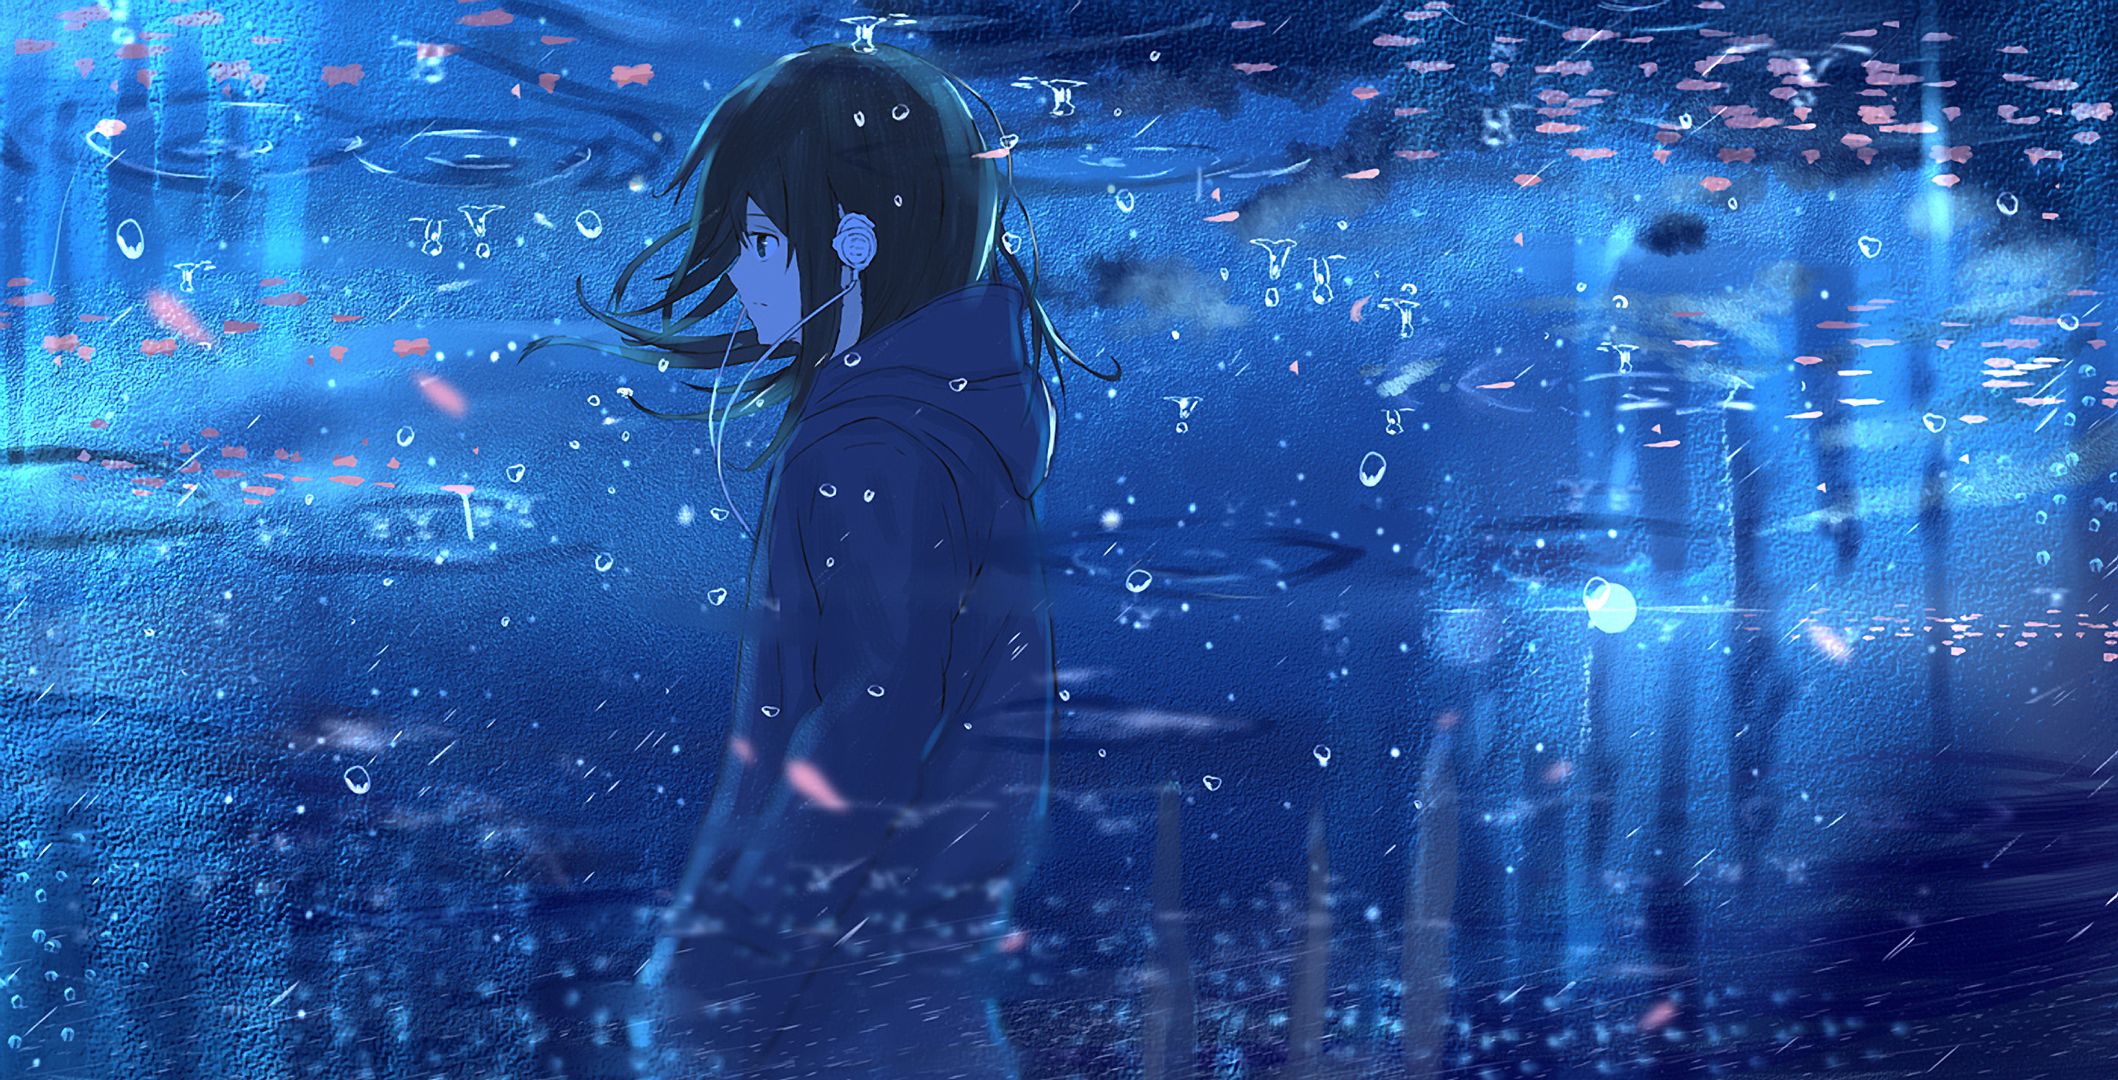 Anime Girl Near Ocean Wallpapers